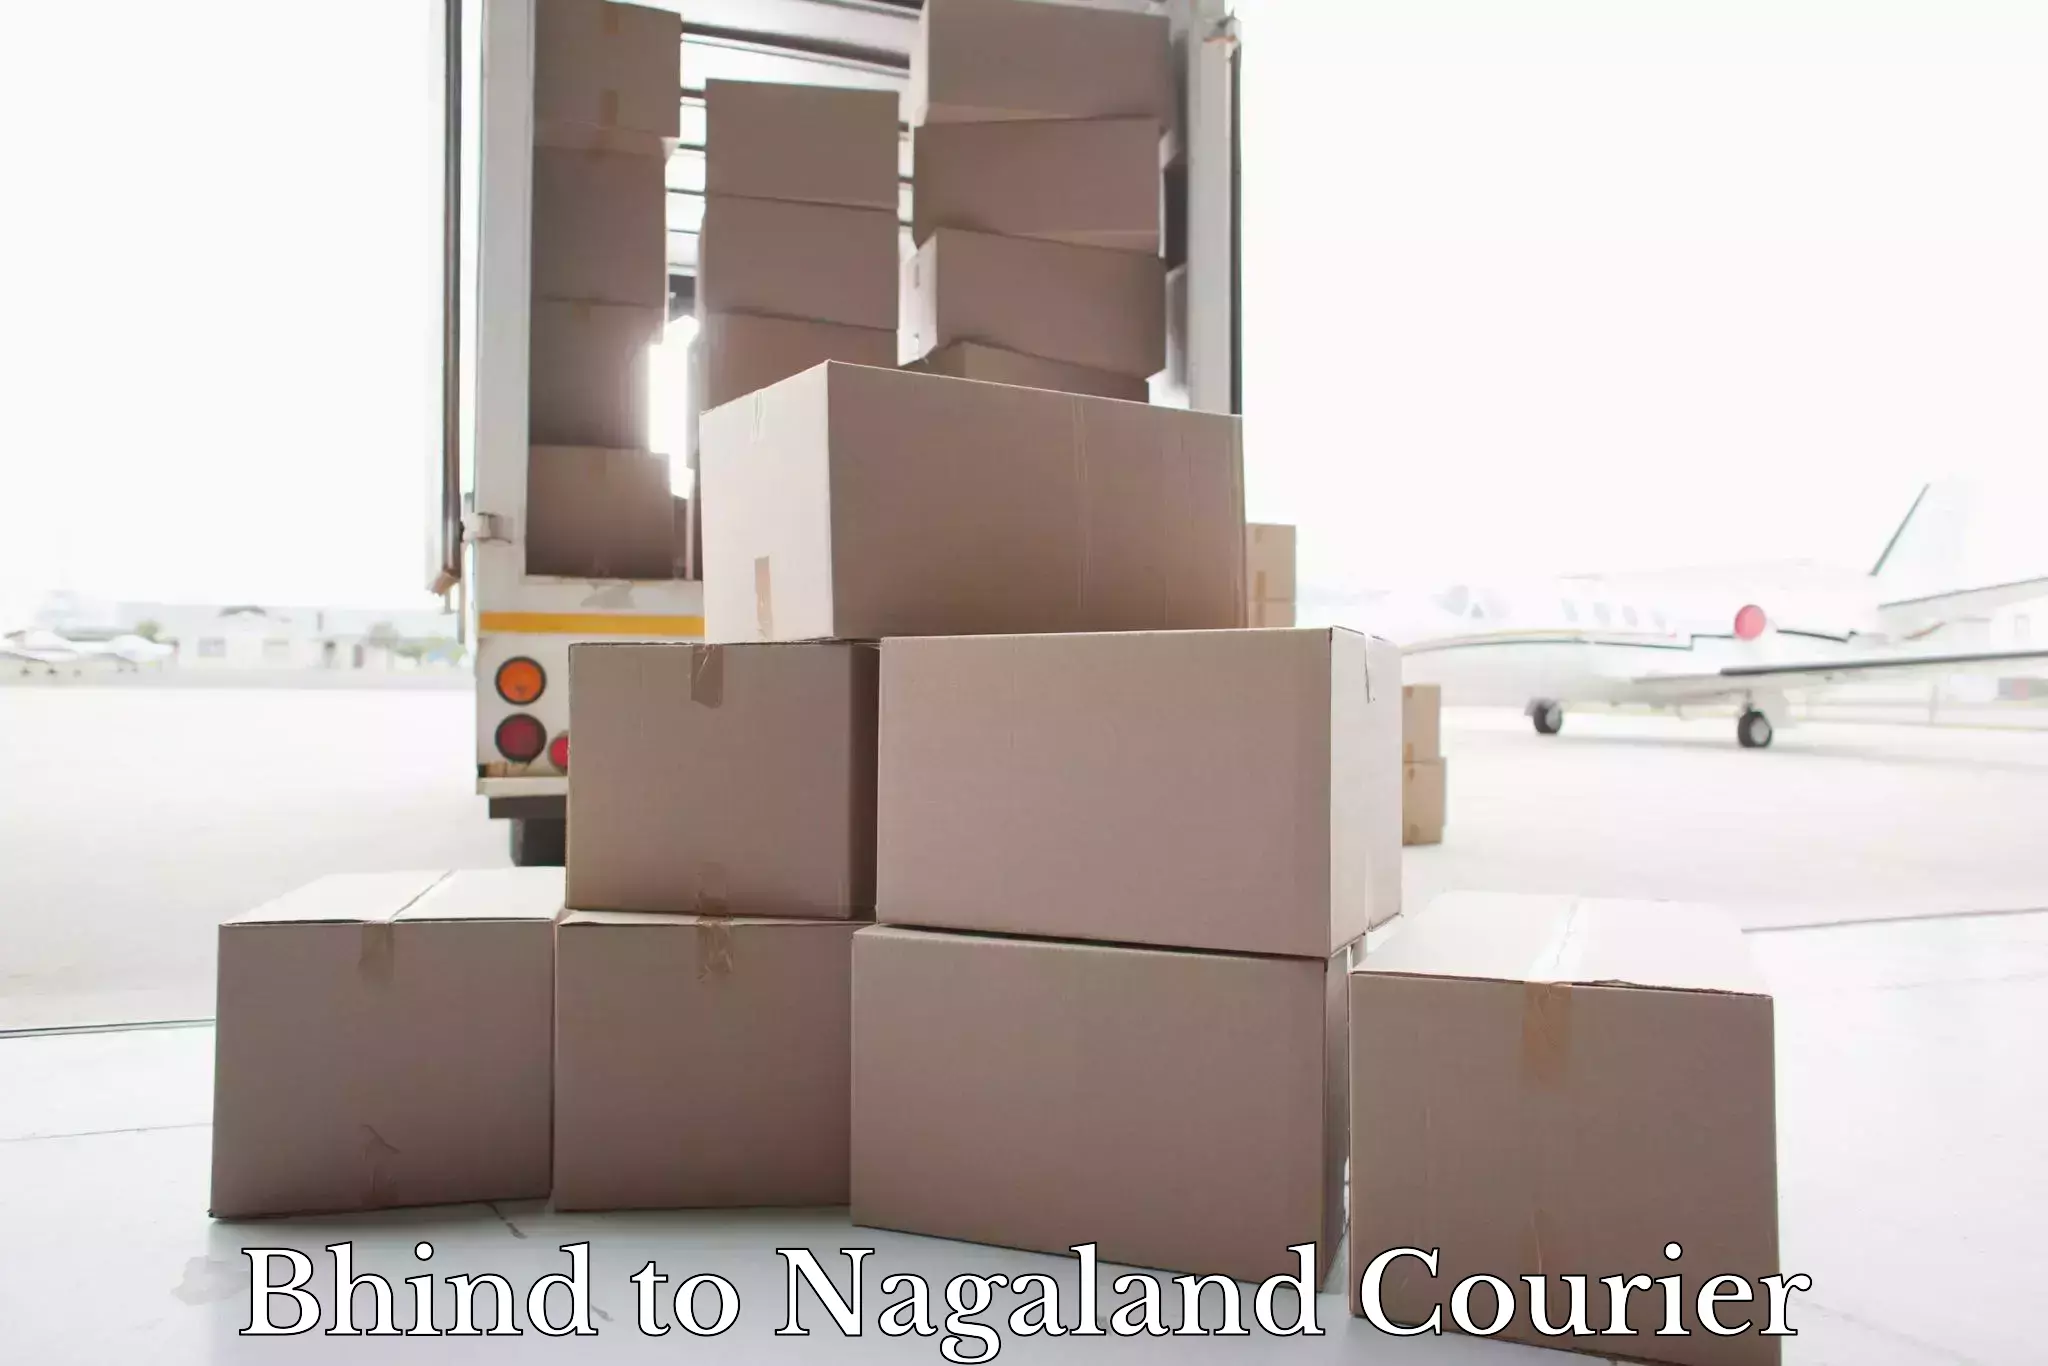 Door-to-door baggage service Bhind to Nagaland